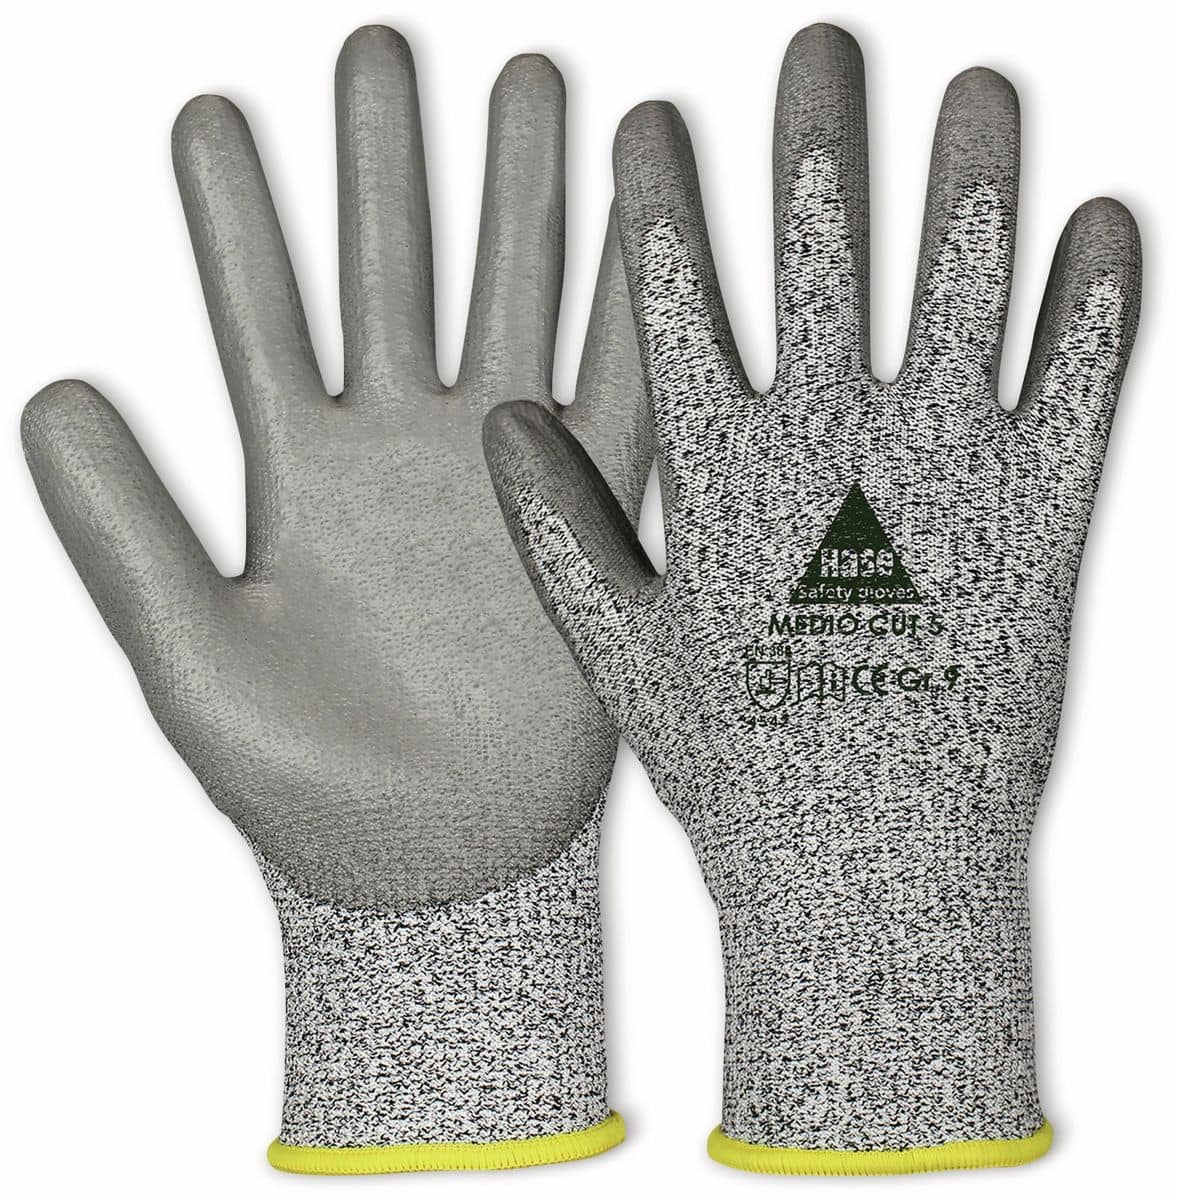 HASE SAFETY GLOVES Schnittschutz-Arbeitshandschuhe Medio Cut 5, EN 388, EN 420, Größe 8 von Hase Safety gloves